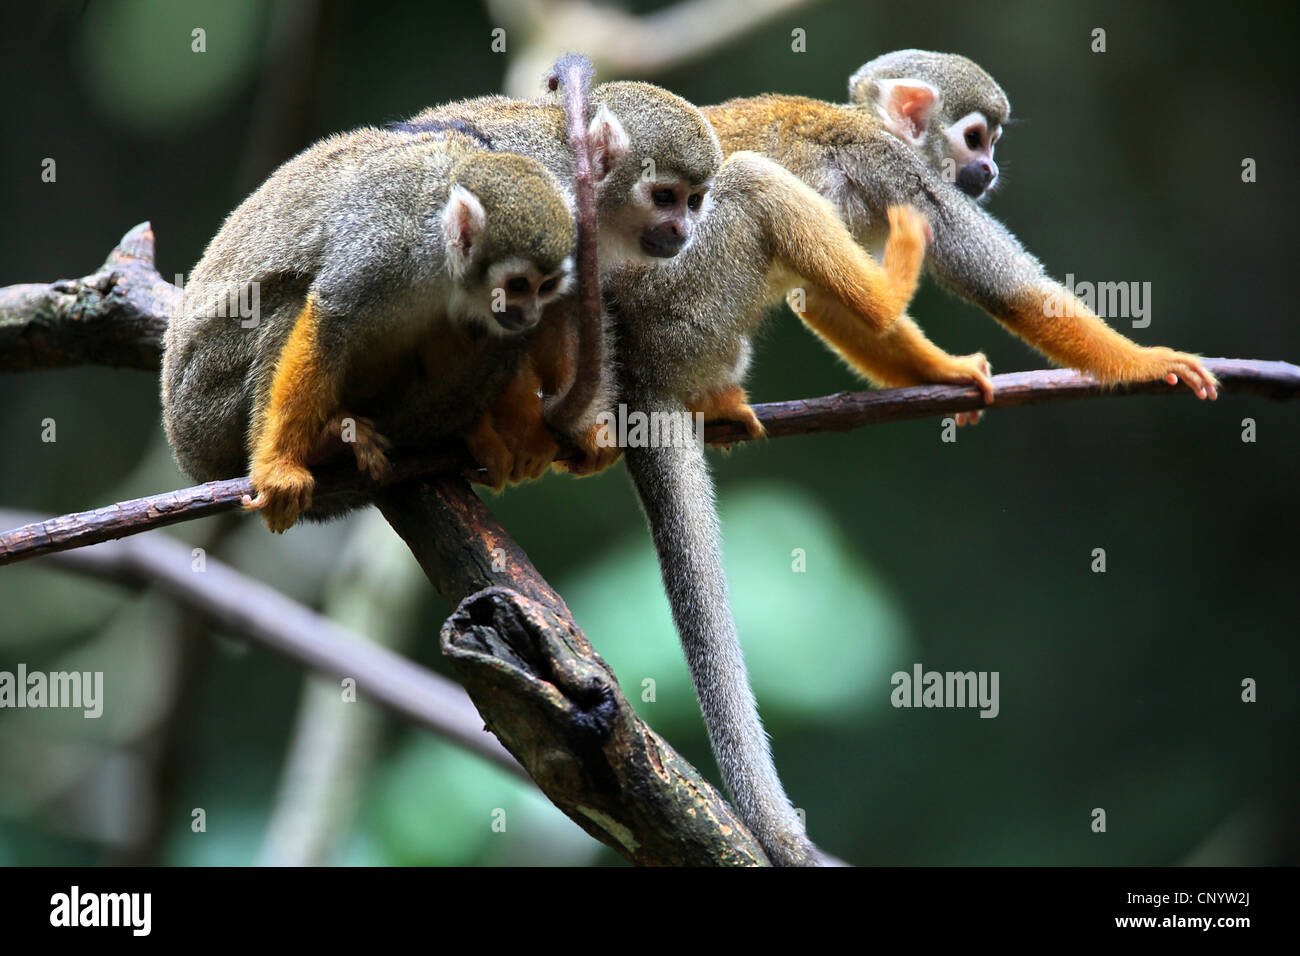 common squirrel monkey (Saimiri sciureus), three monkeys sitting on a branch, Brazil, Para Stock Photo